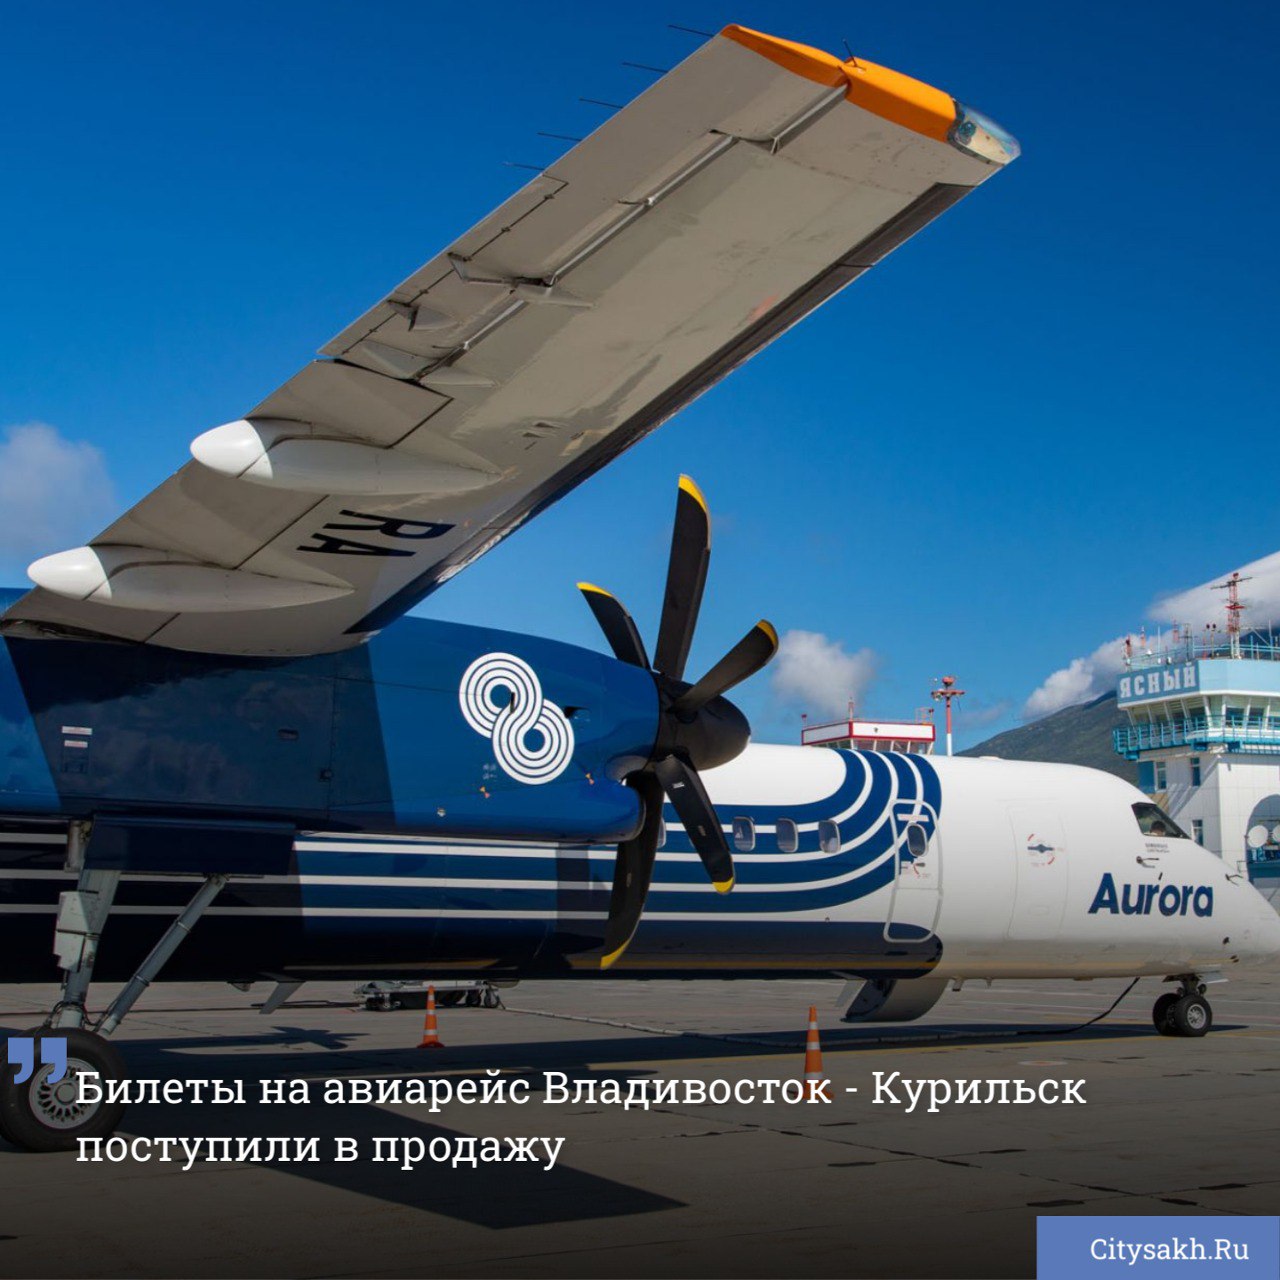 Дальневосточная авиакомпания «Аврора» объявила о старте продаж билетов, соединяющих воздушным мостом Итуруп и Владивосток.